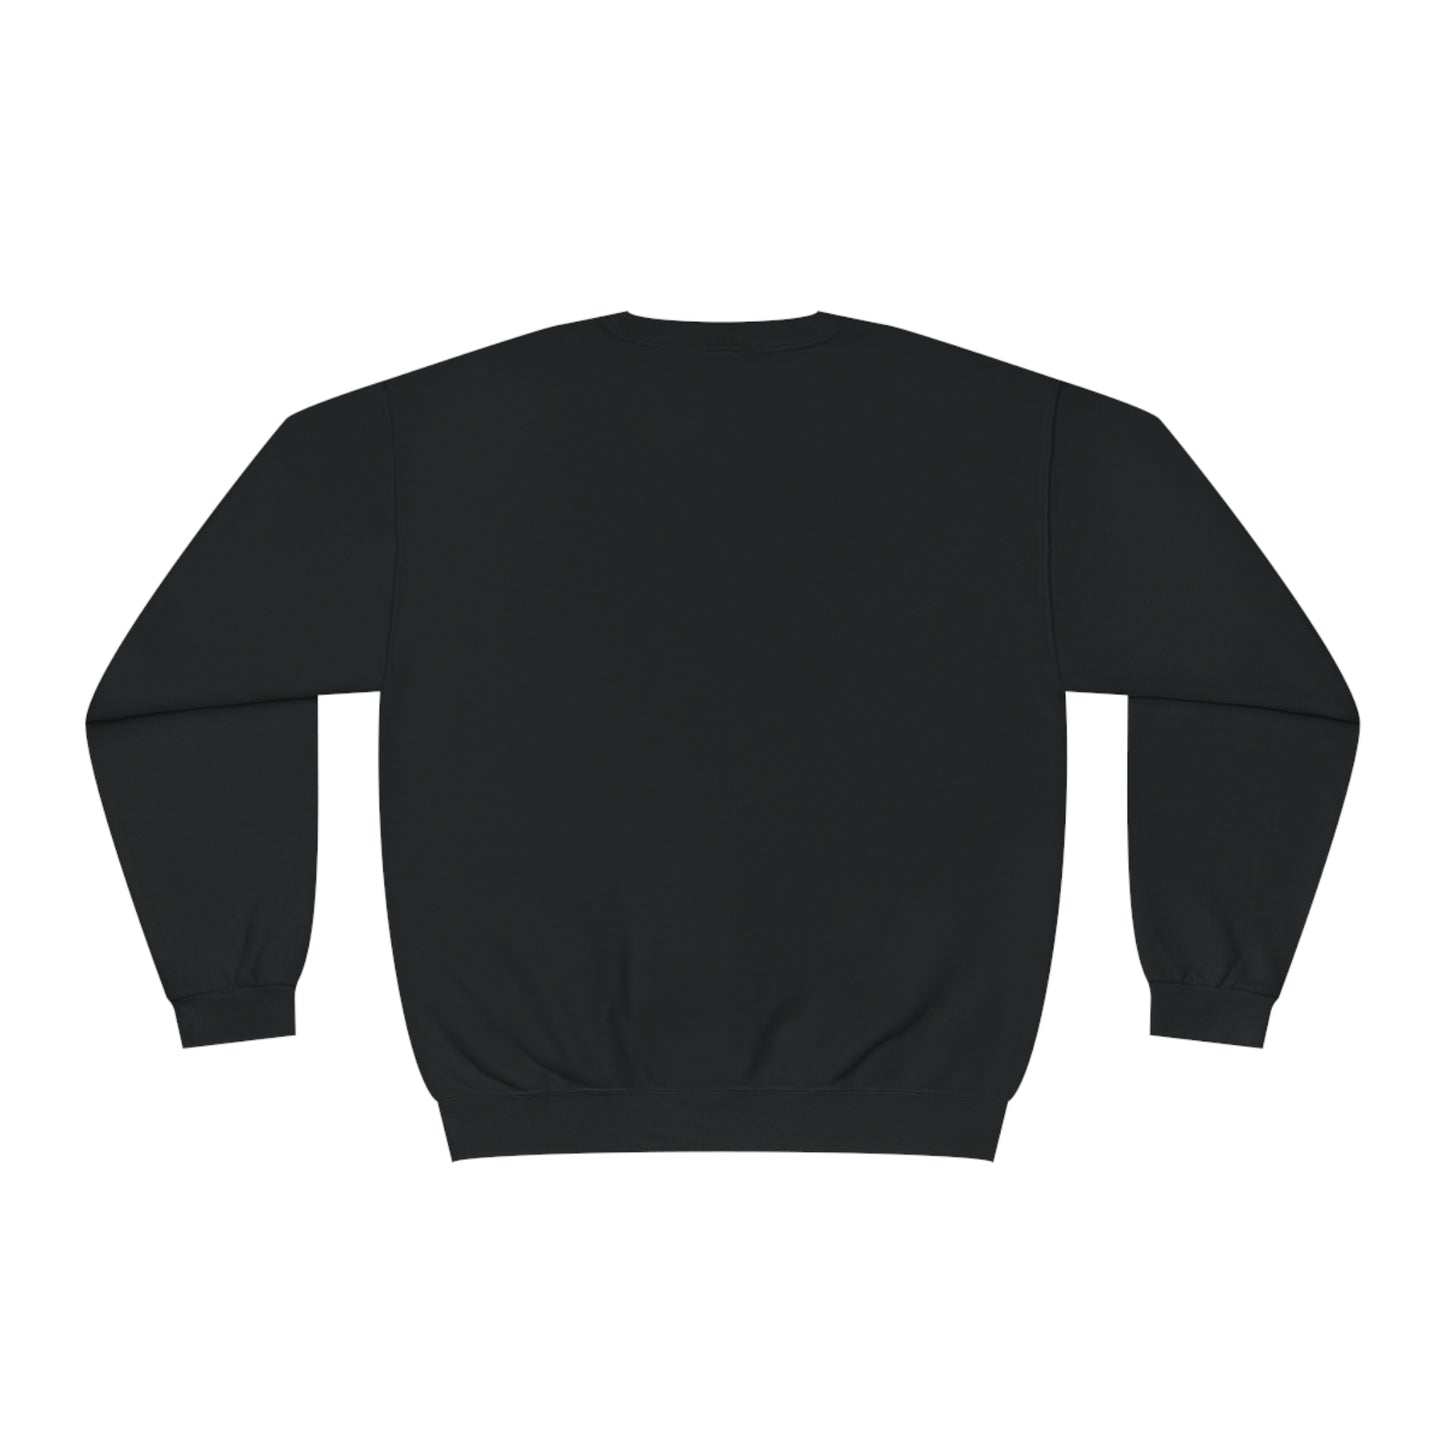 New! Unisex 'Spoiler Alert' Crewneck Sweatshirt (10 colors)